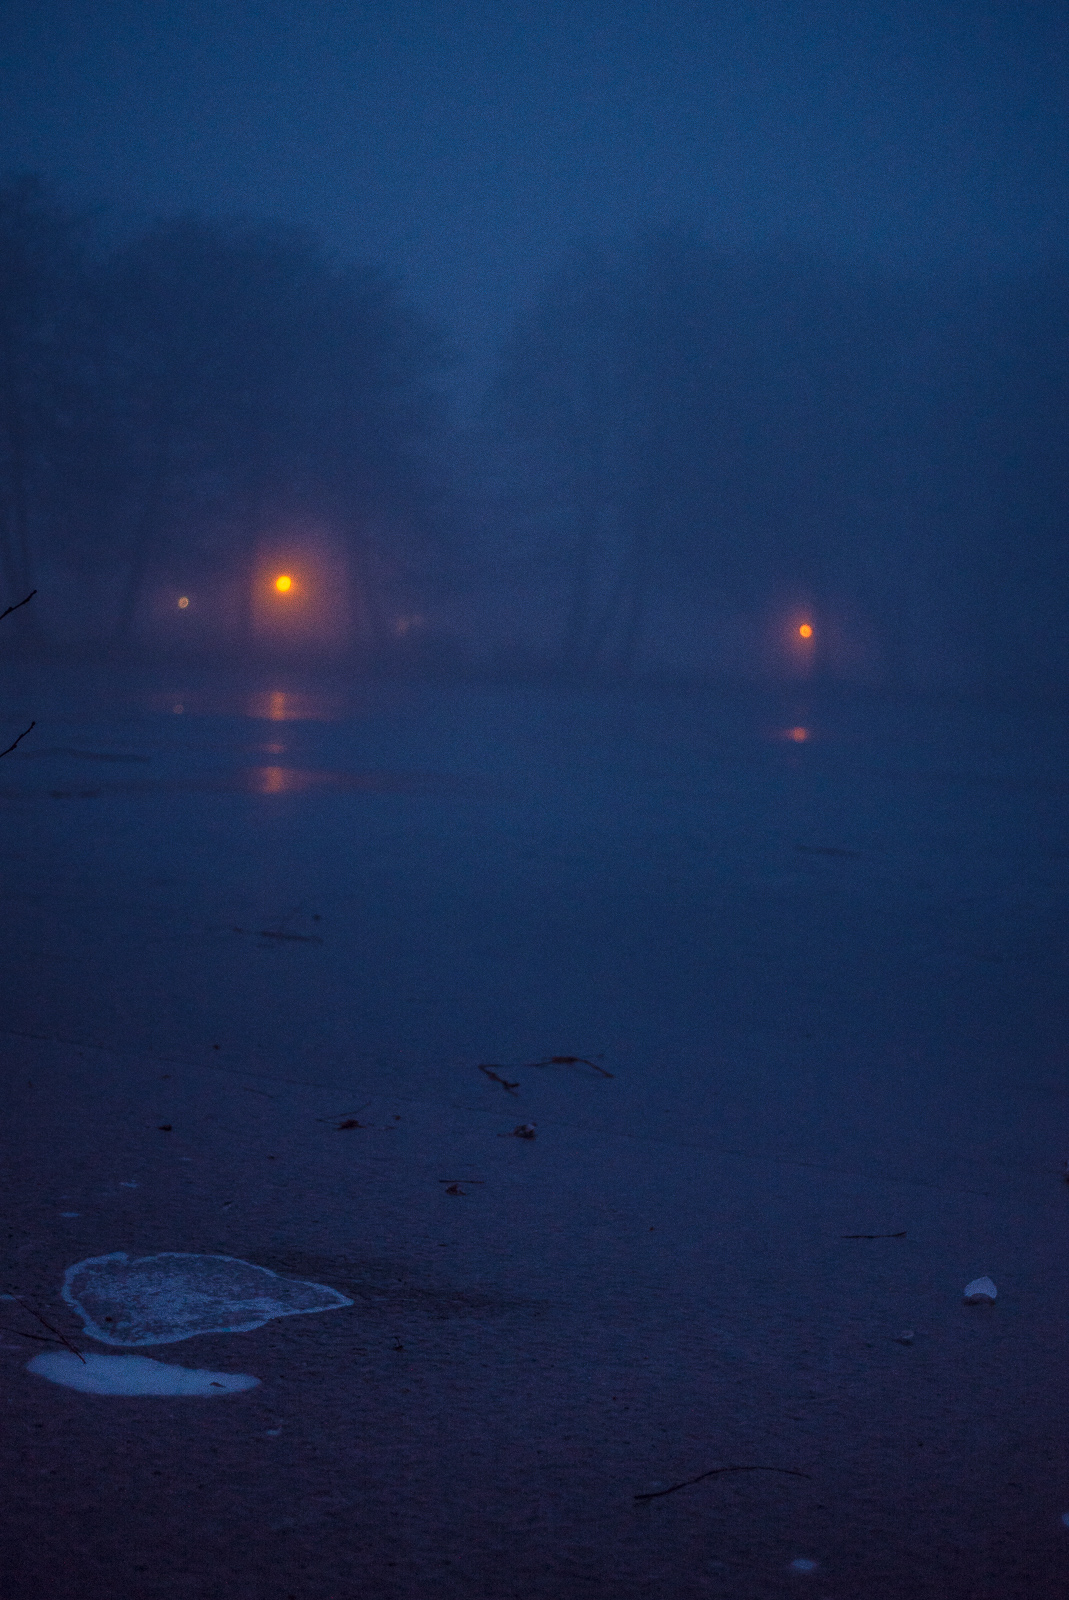 Abendlicher Nebel in blauem Dämmerlicht: Eis auf dem Teich, Baumschemen im Hintergrund